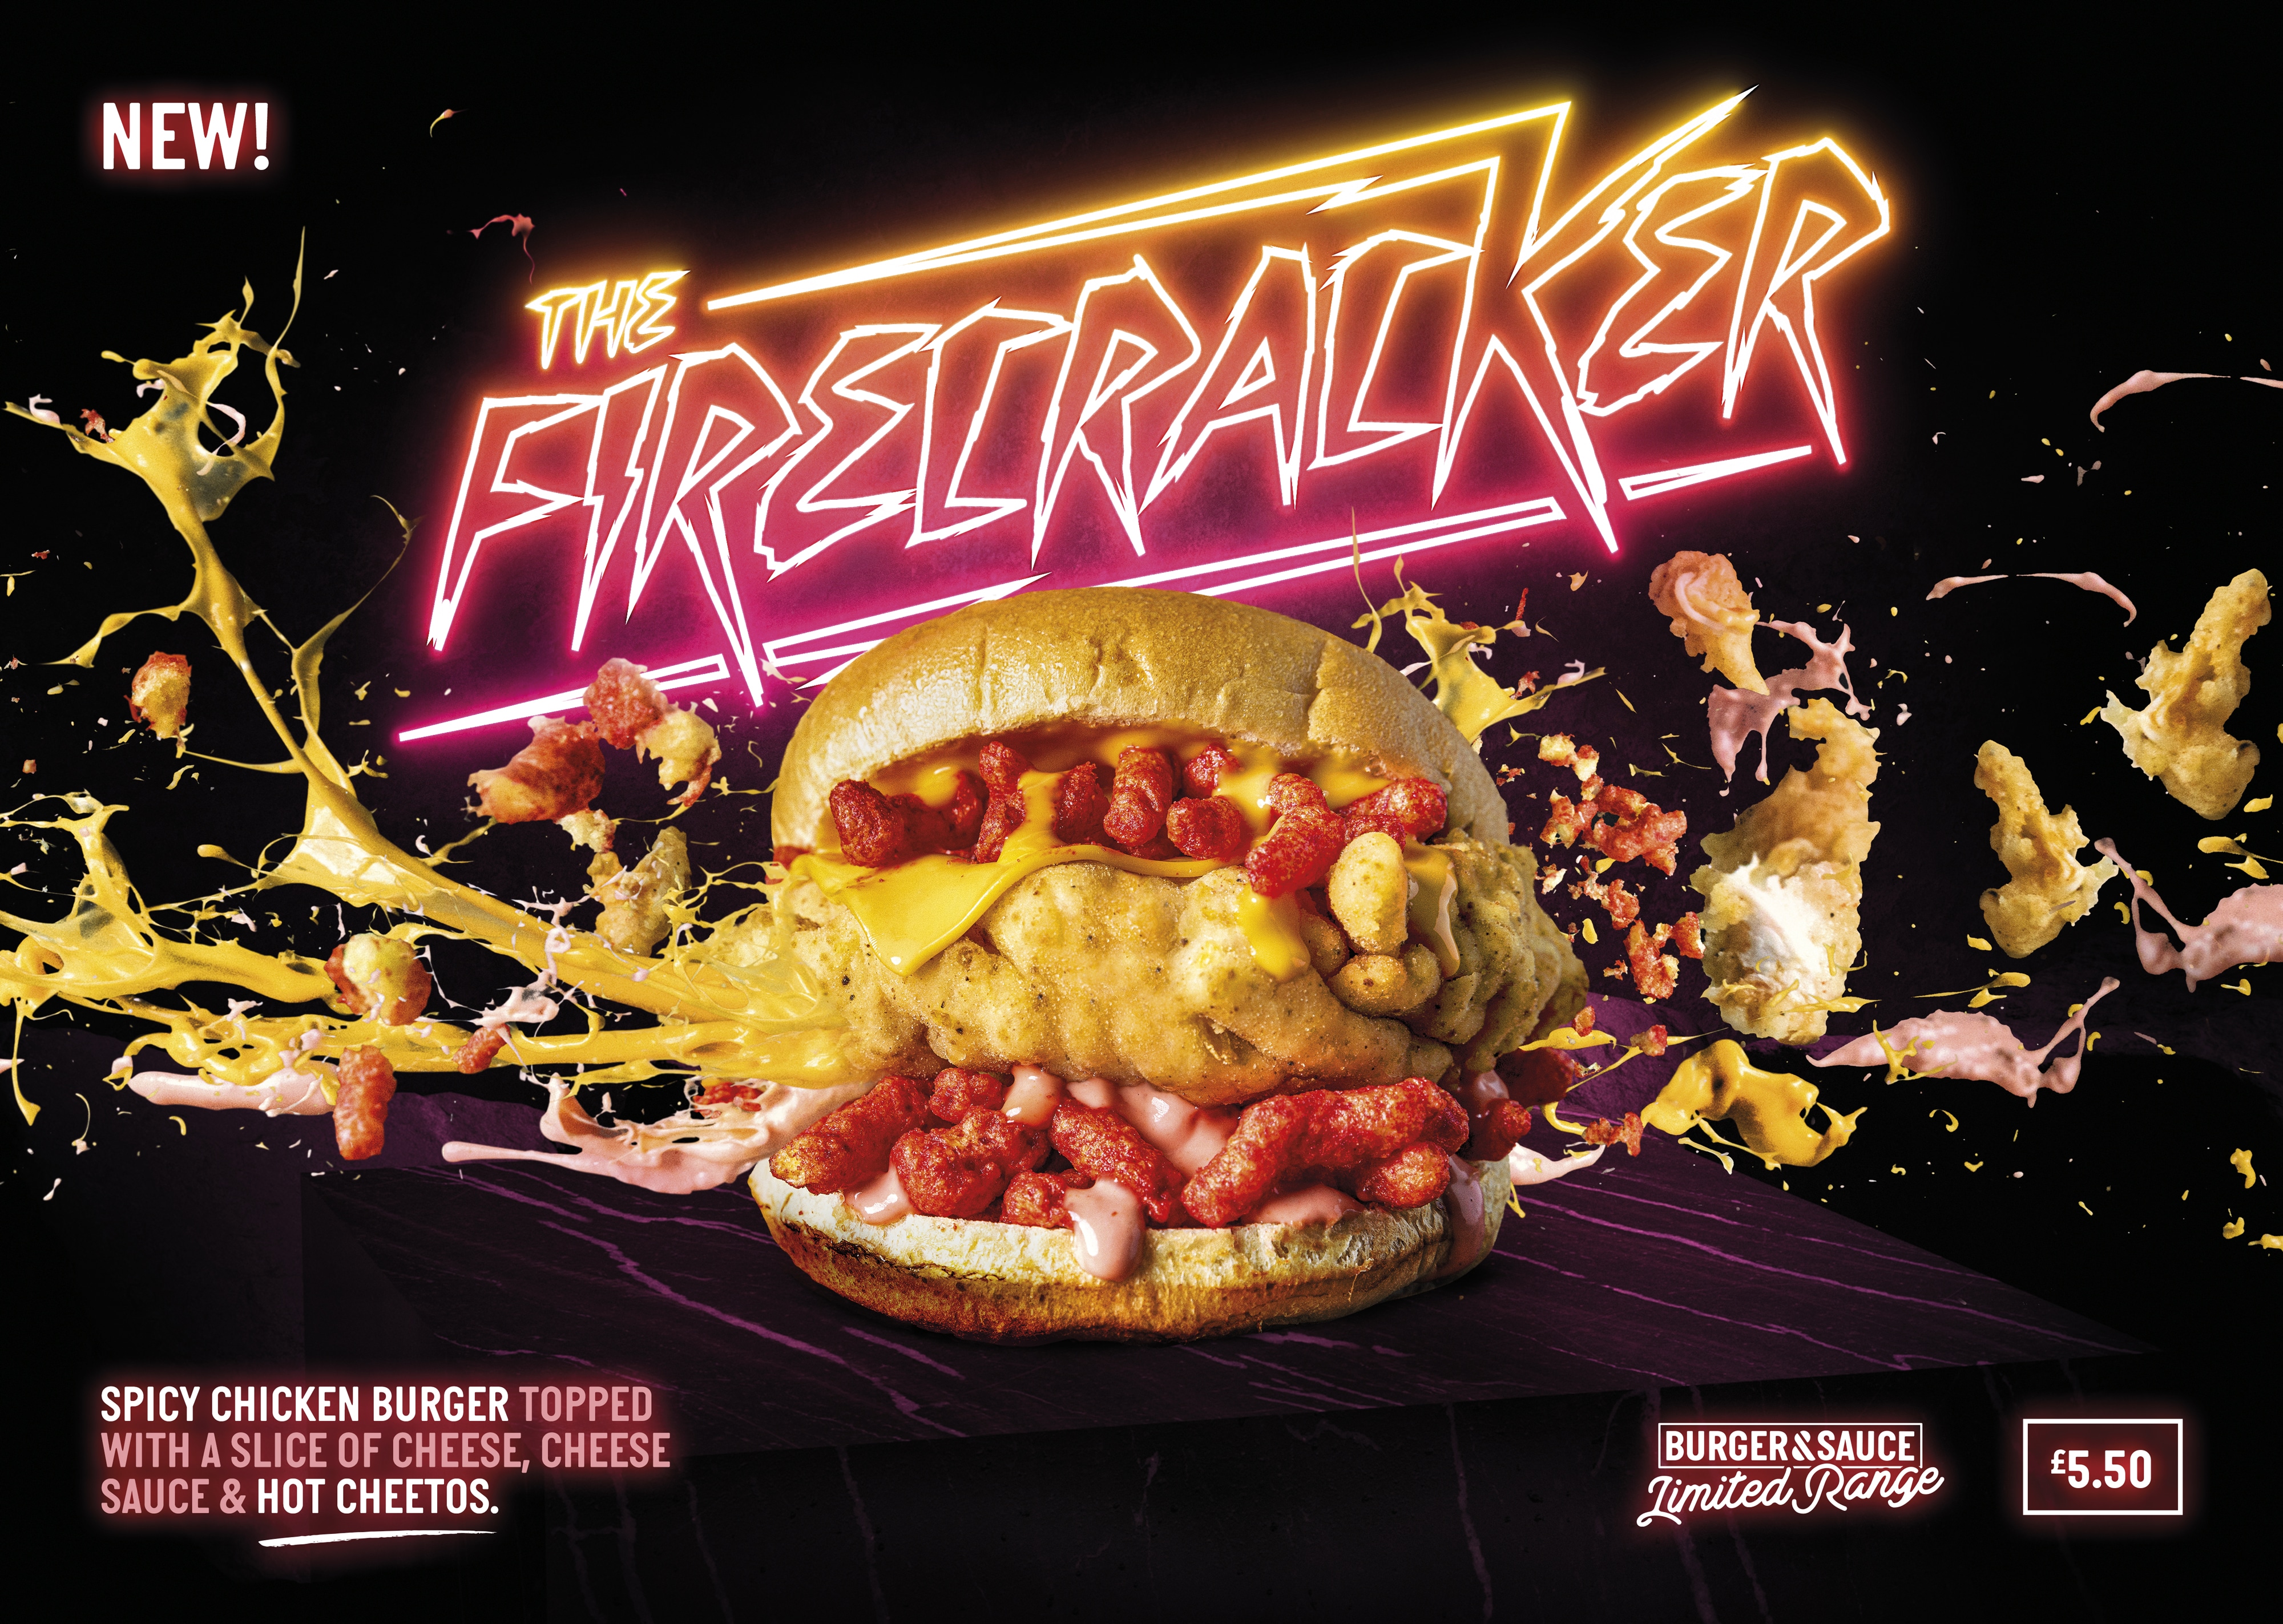 burger and sauce firecracker burger poster a3 landscape